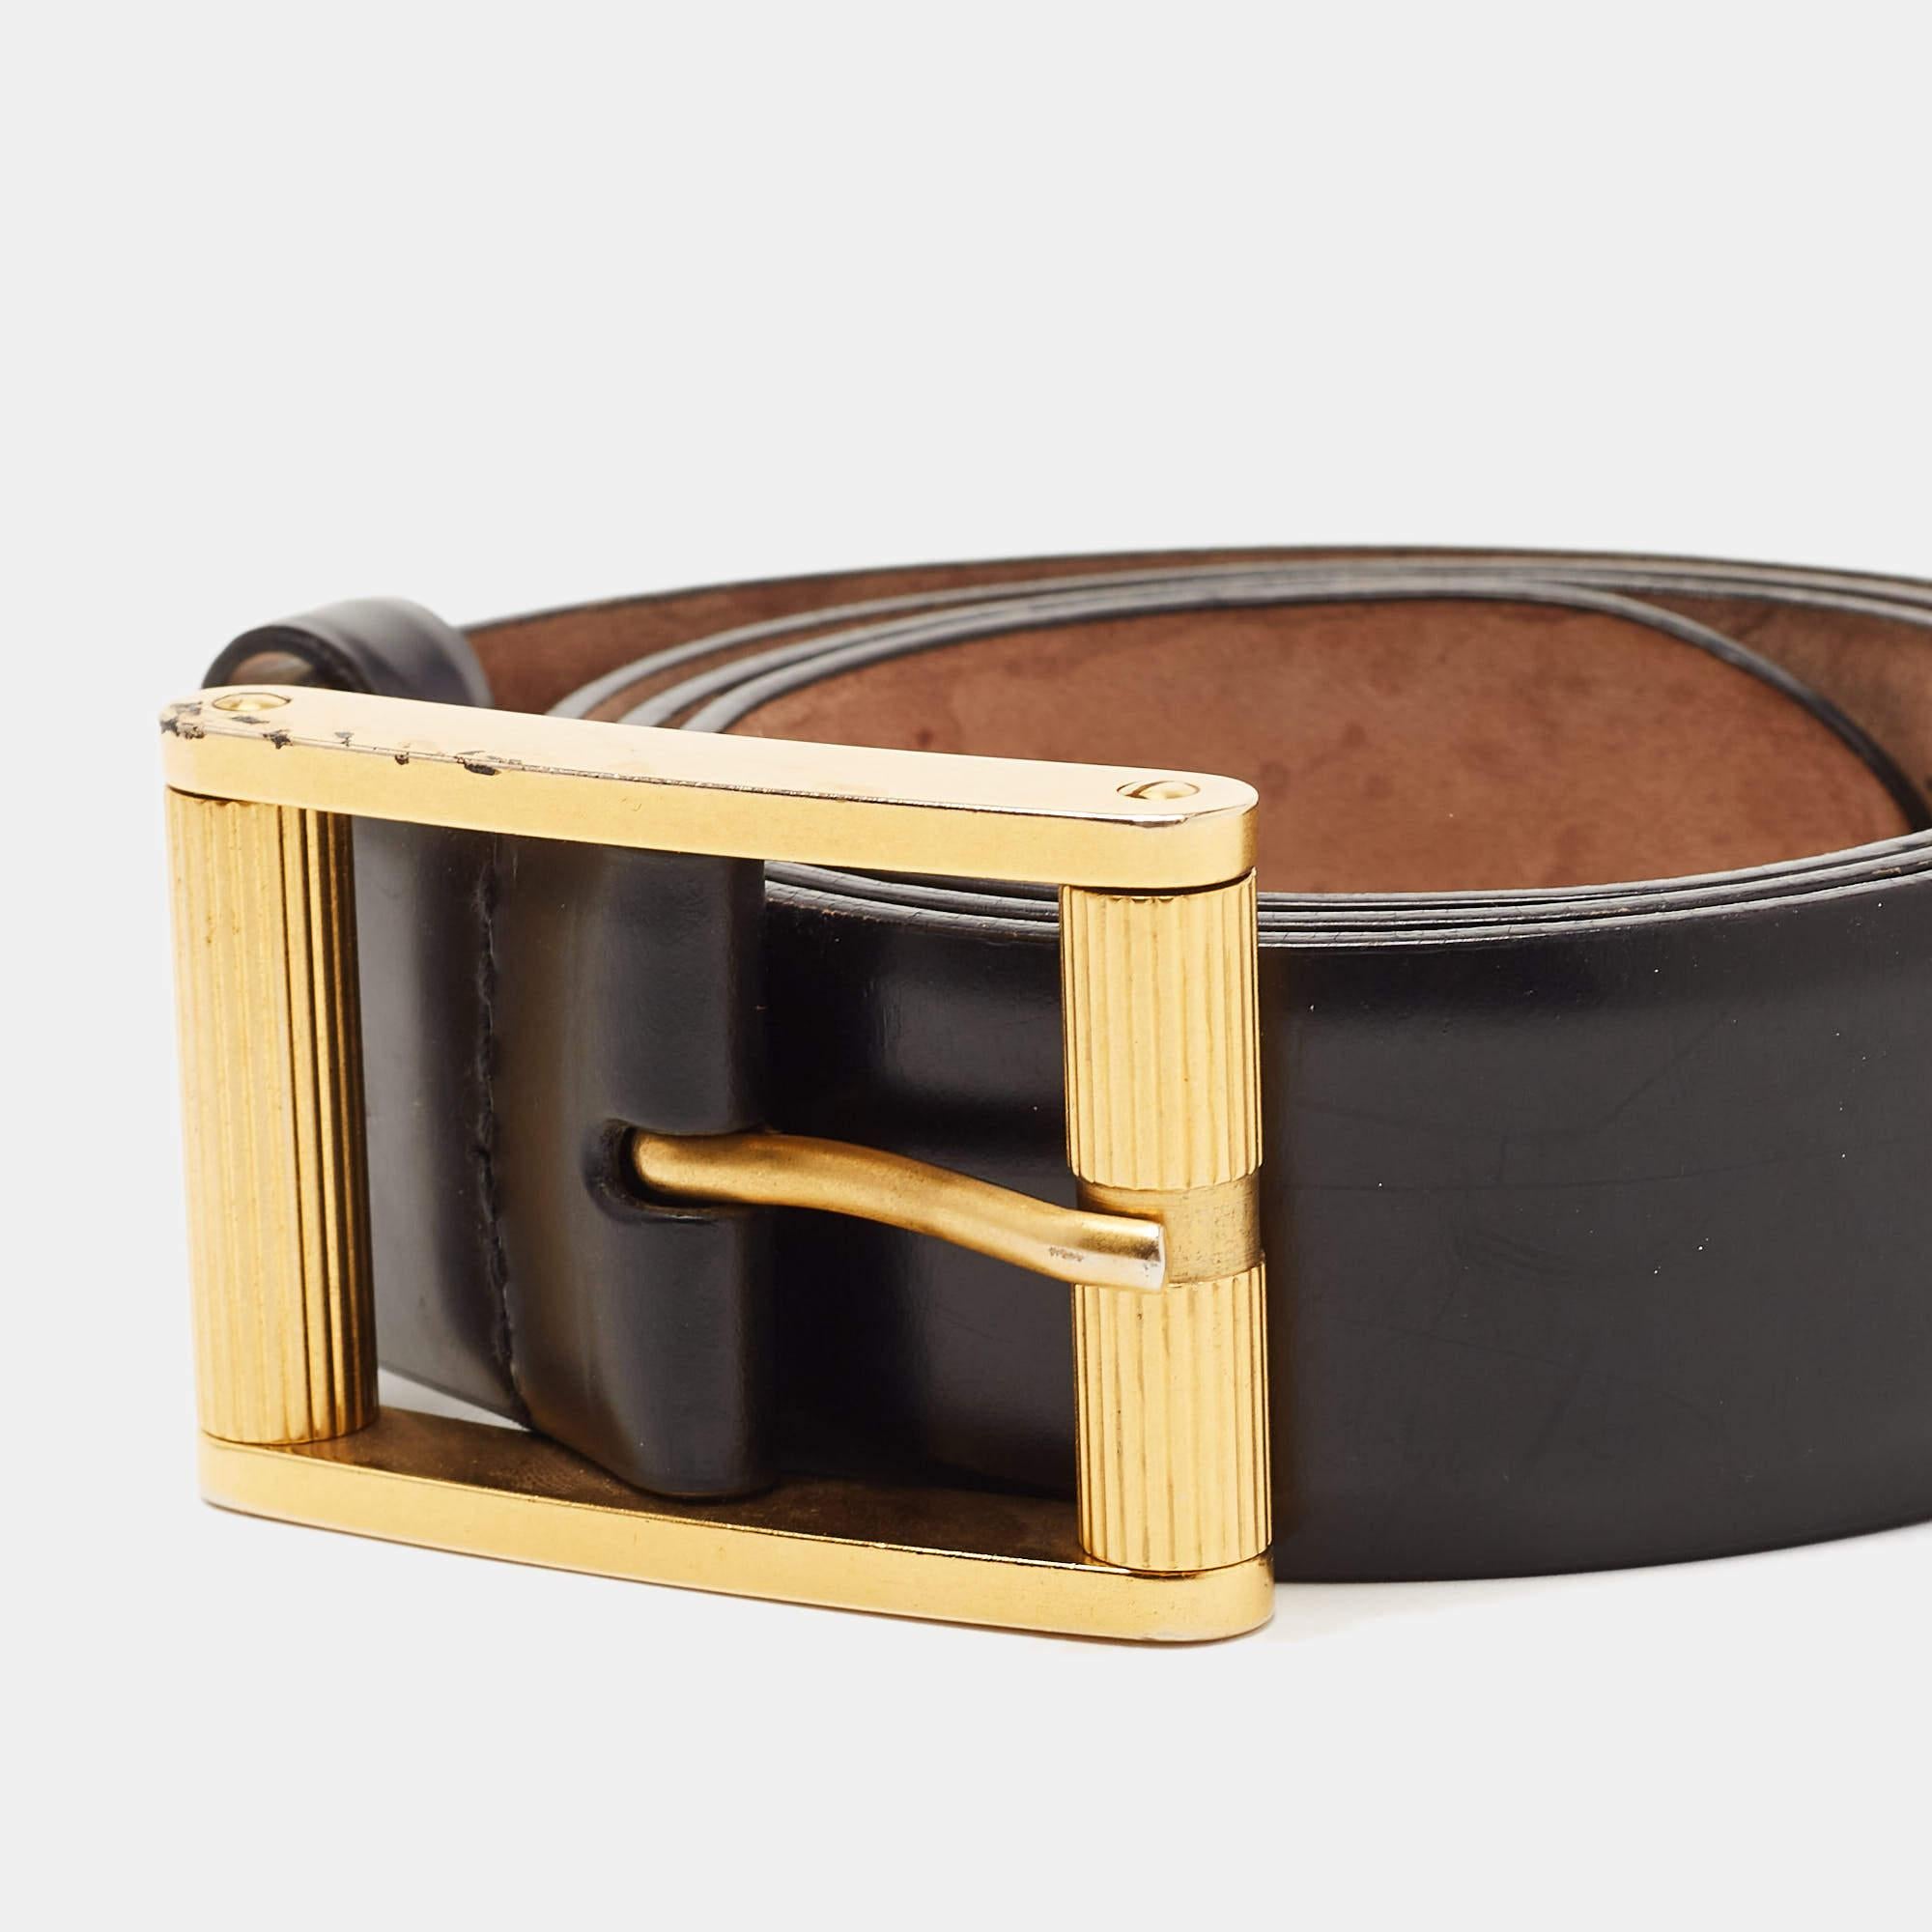 Accessoire incontournable, cette ceinture D.G. s'ajoute dès aujourd'hui à votre collection classique. Cette ceinture durable est fabriquée en cuir noir et est complétée par une fine boucle à ardillon en métal doré.

